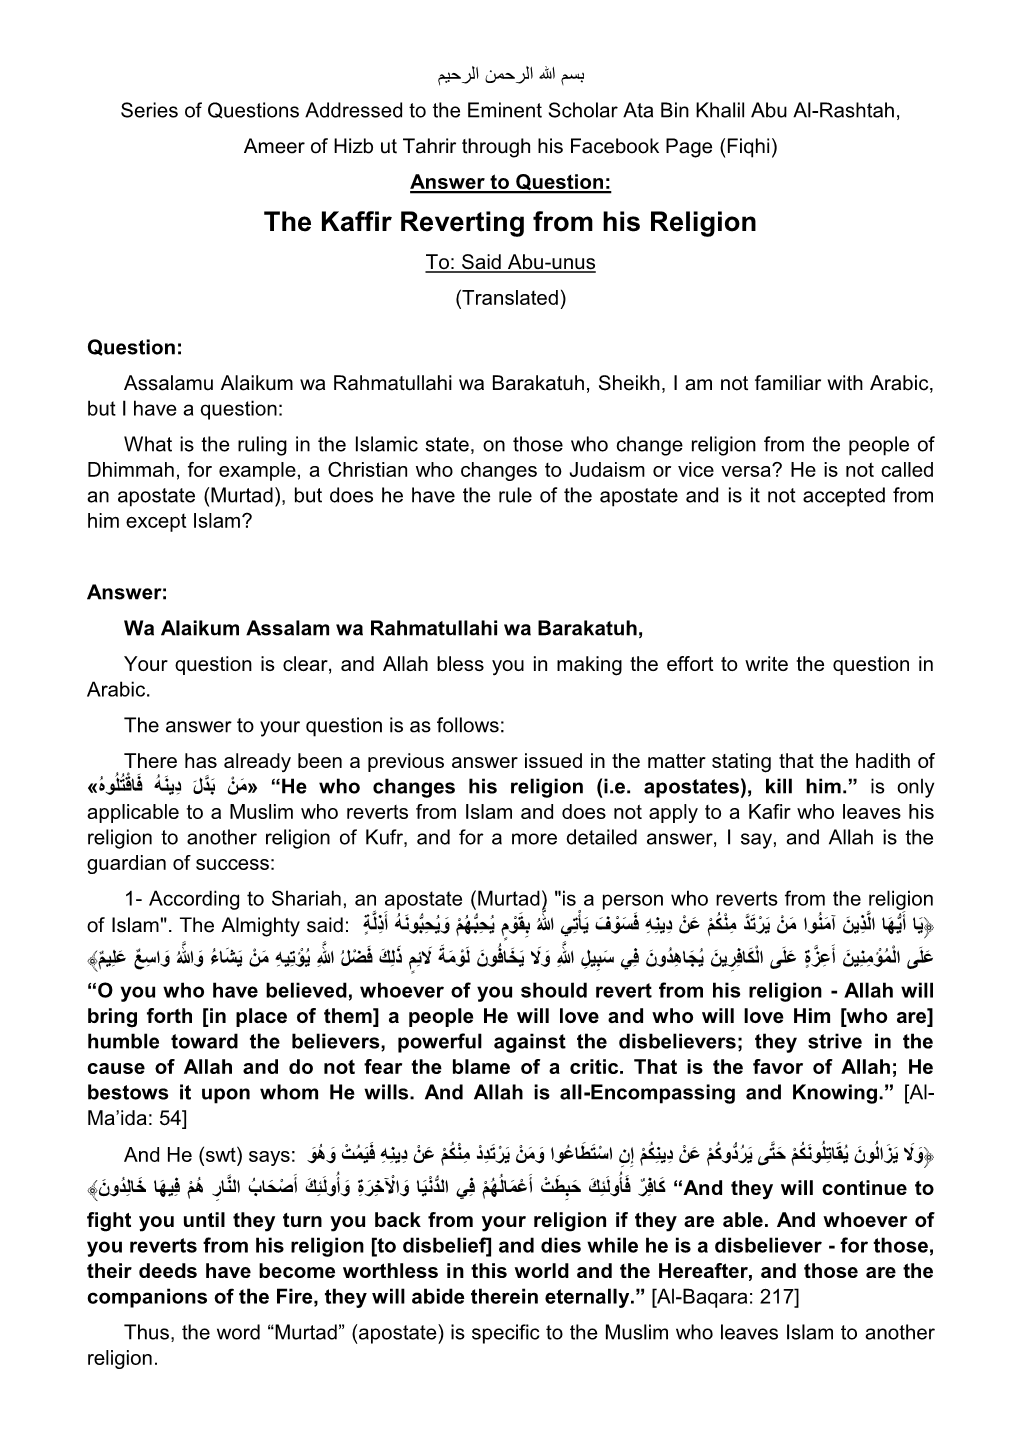 The Kafir Reverting from His Religion